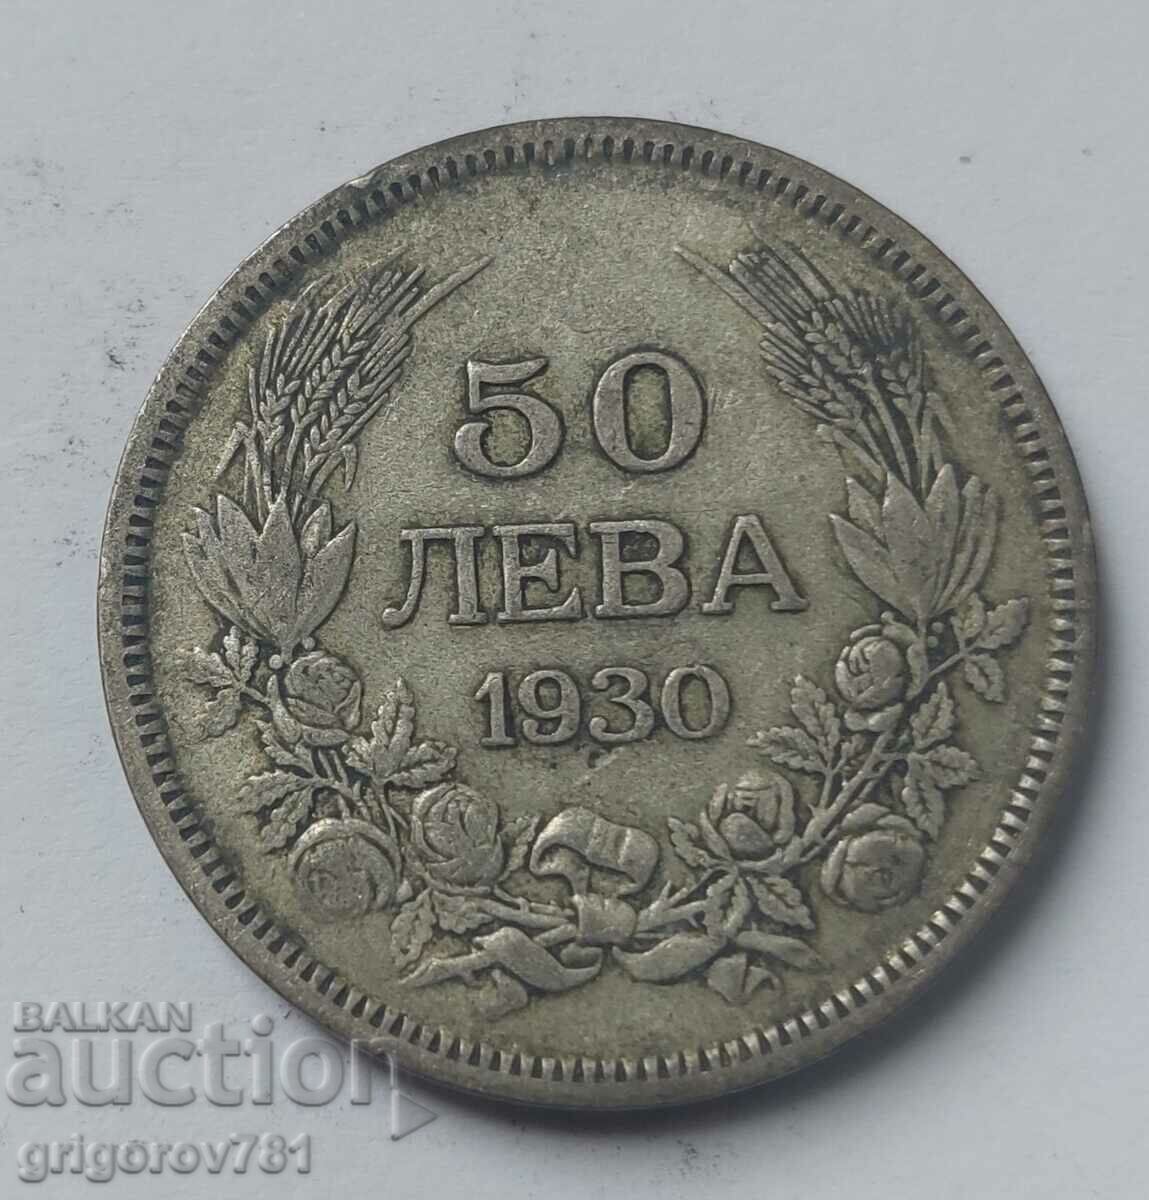 Ασήμι 50 λέβα Βουλγαρία 1930 - ασημένιο νόμισμα #32